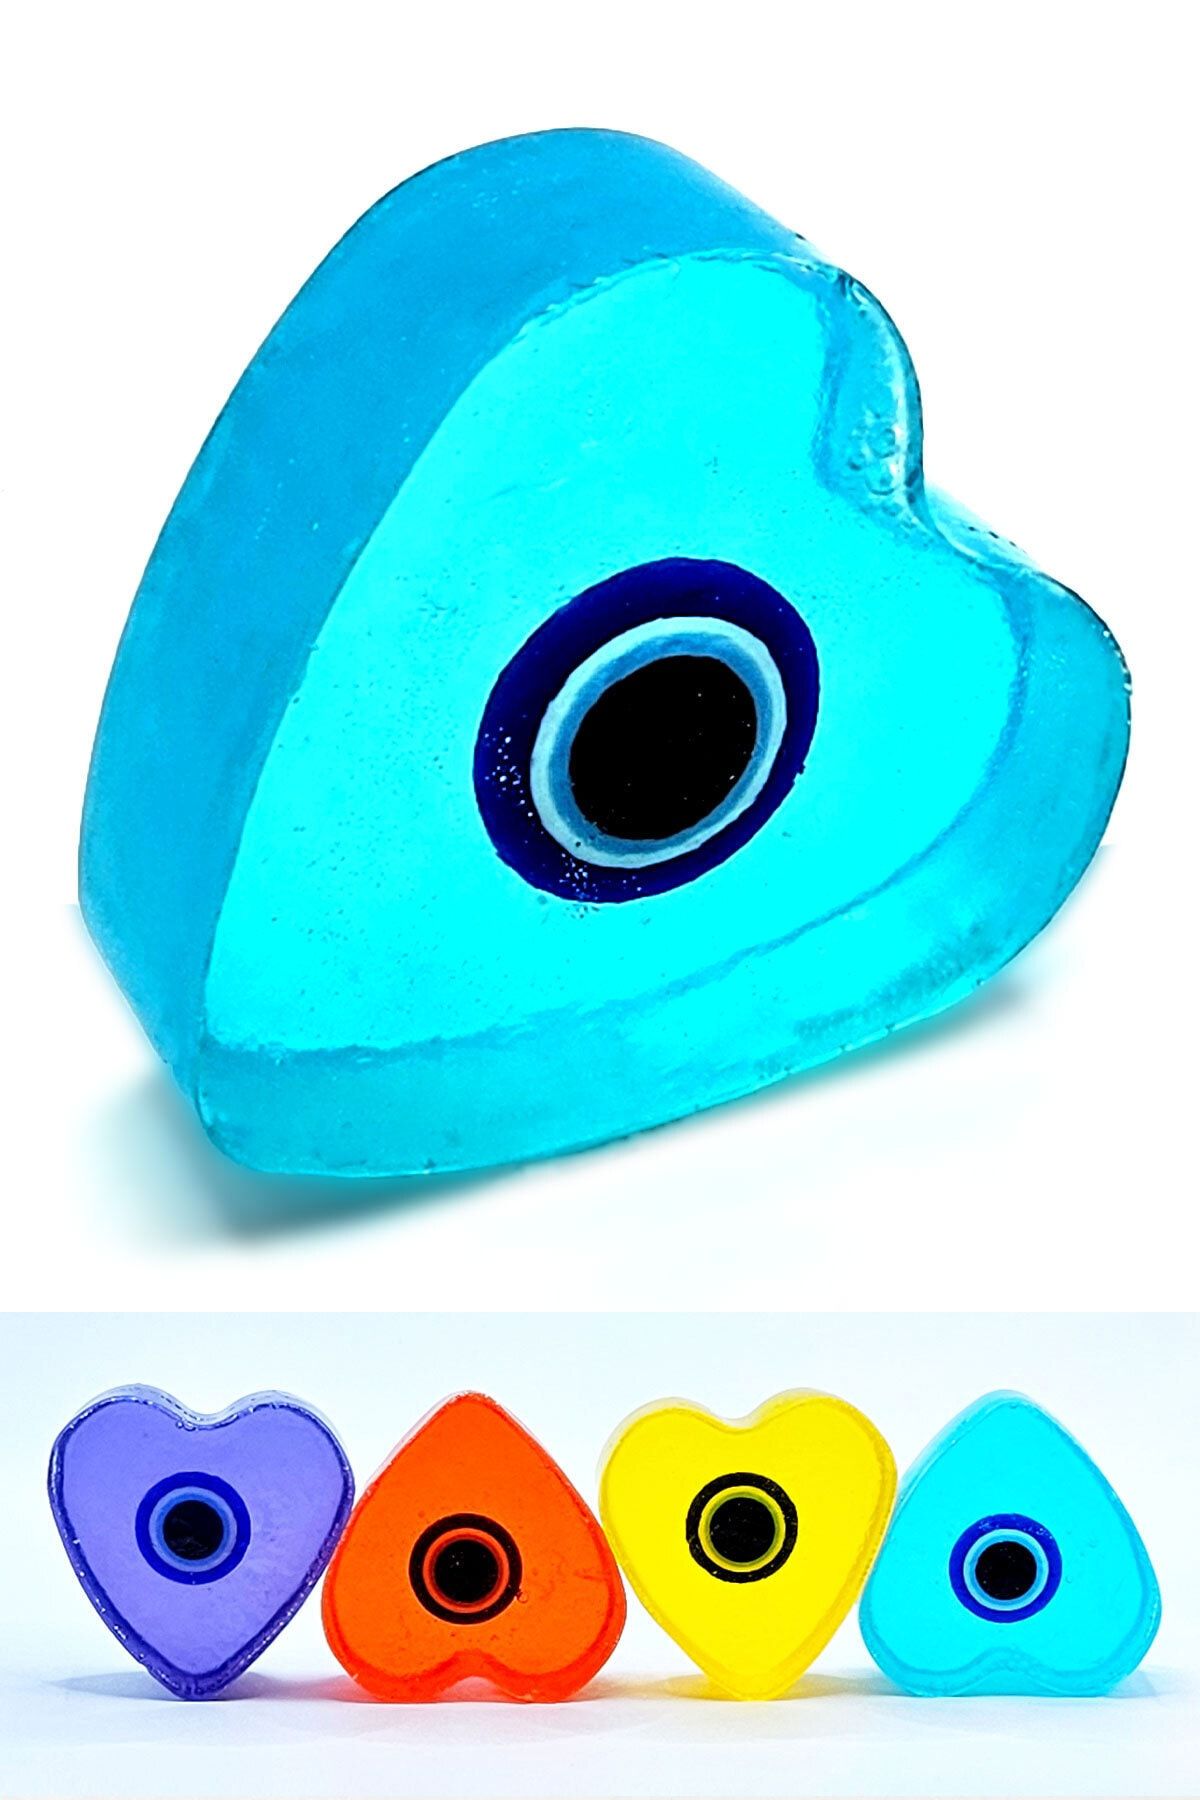 JOKER ABDUL Bahar Kokulu Dekoratif Hediyelik Nazar Boncuklu Mavi Renk Şeffaf Doğal Cilt Dostu Kalp Sabun